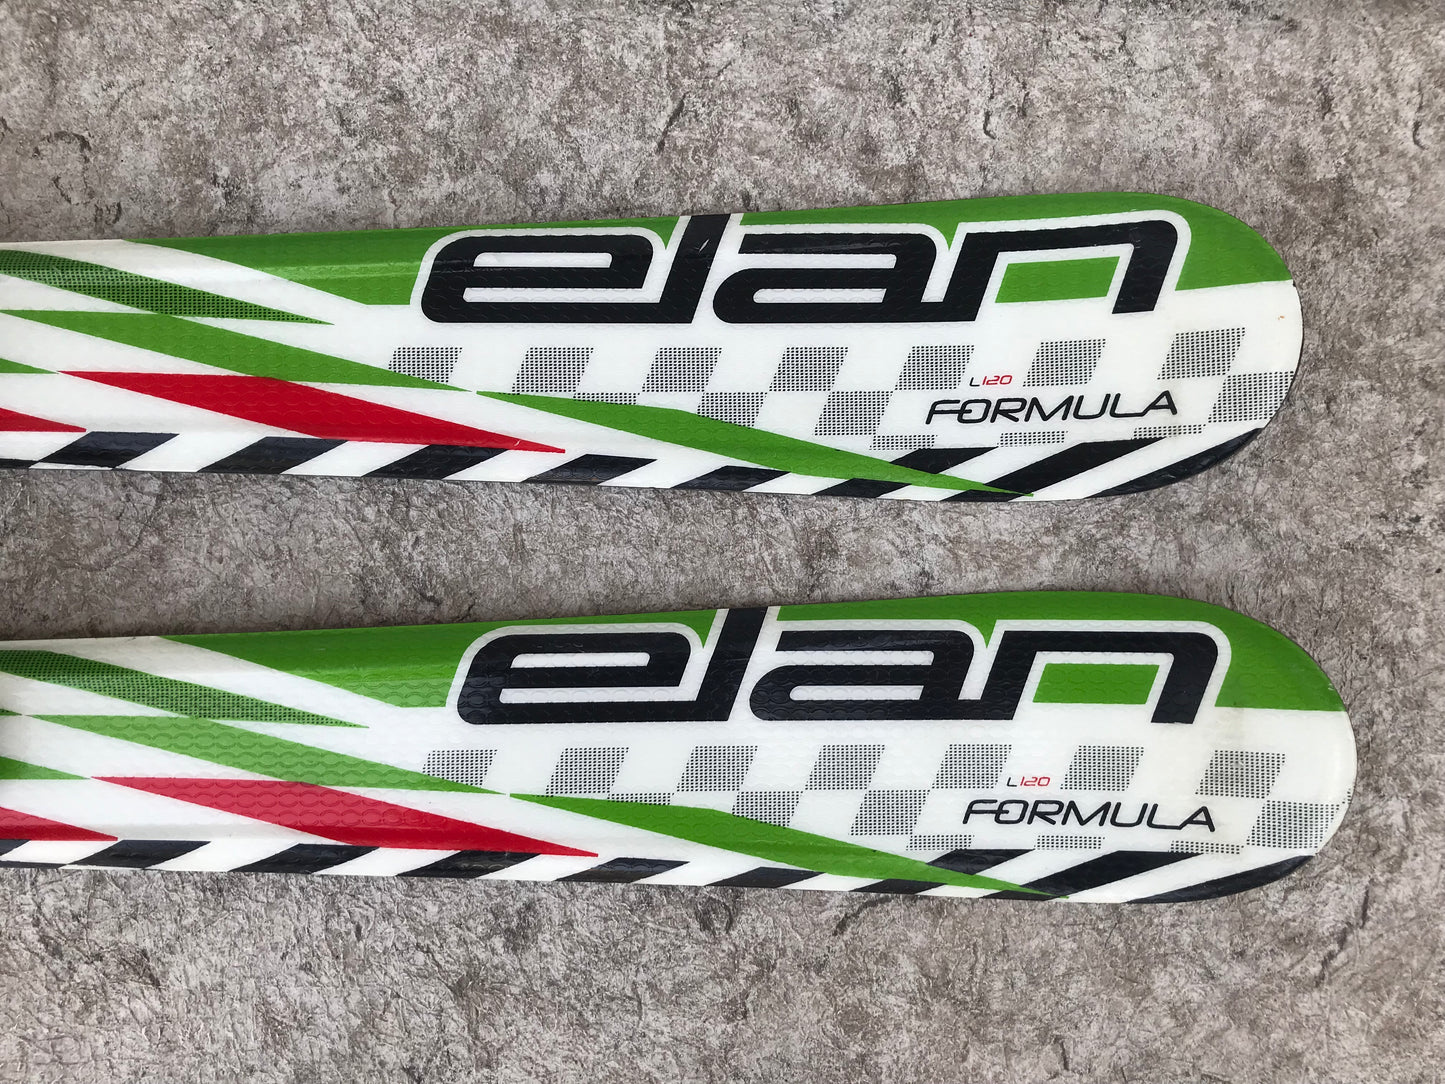 Ski 120 Elan Formula Race Green Red White  Parabolic With Bindings